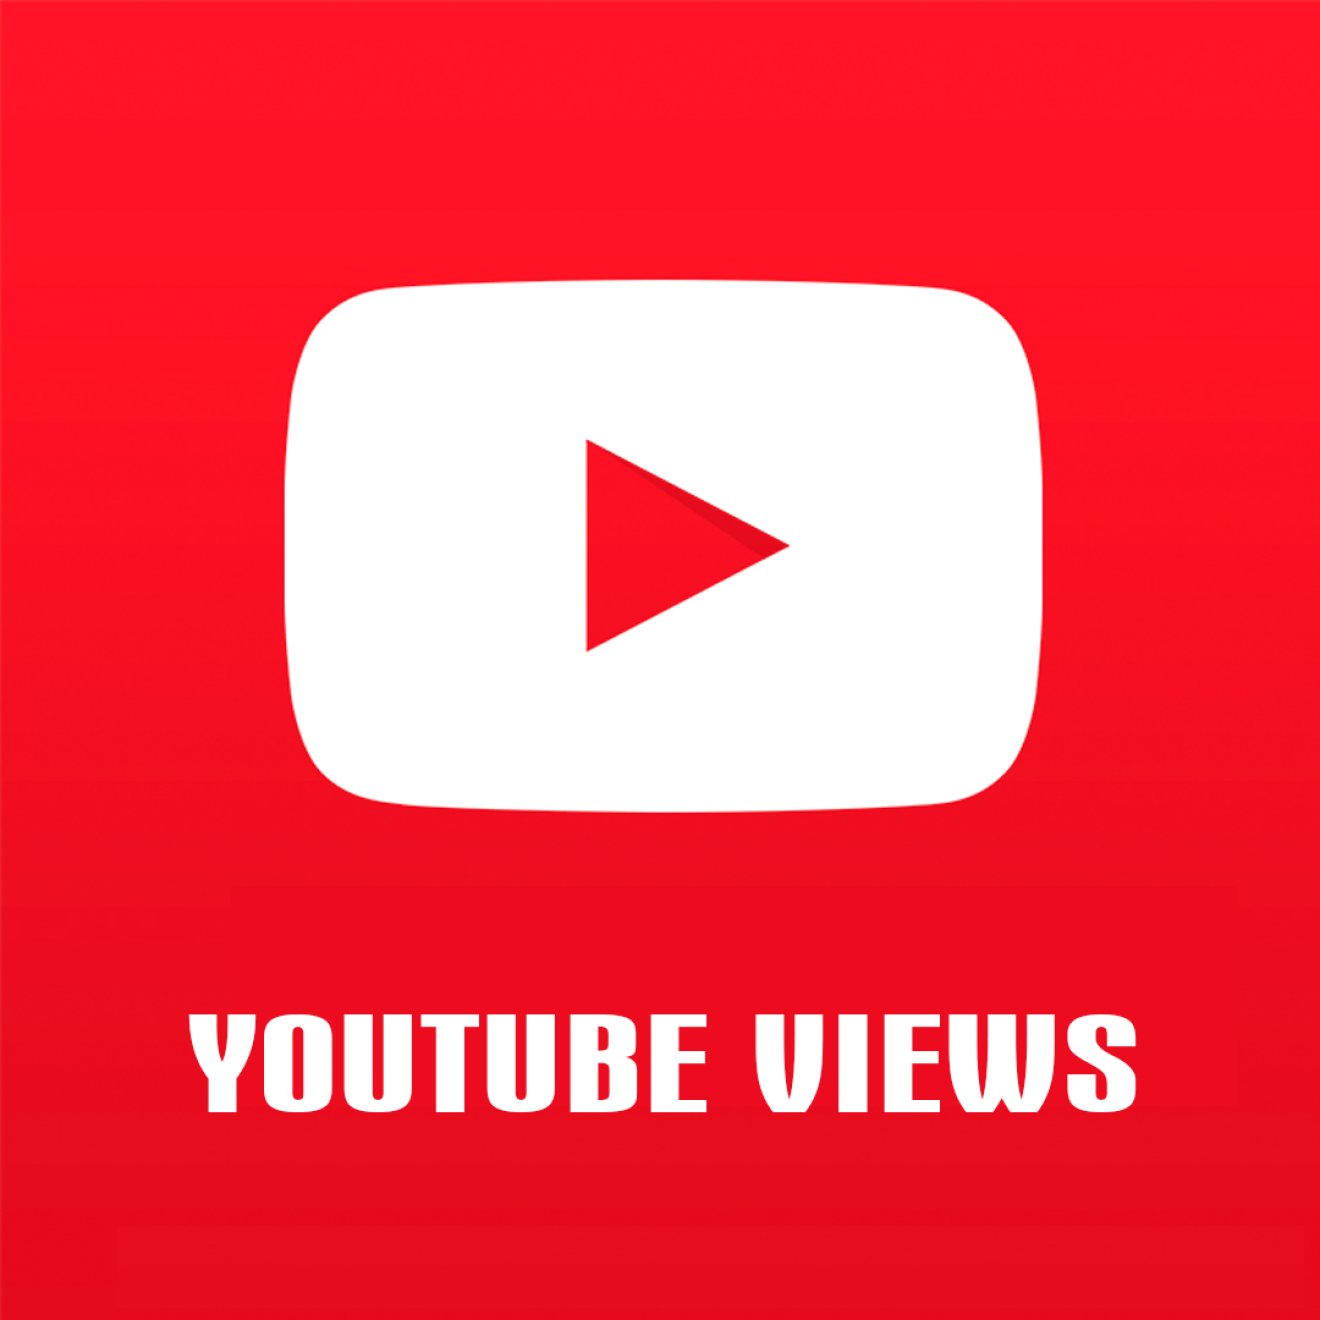 100 YouTube Views / Aufrufe für Dich